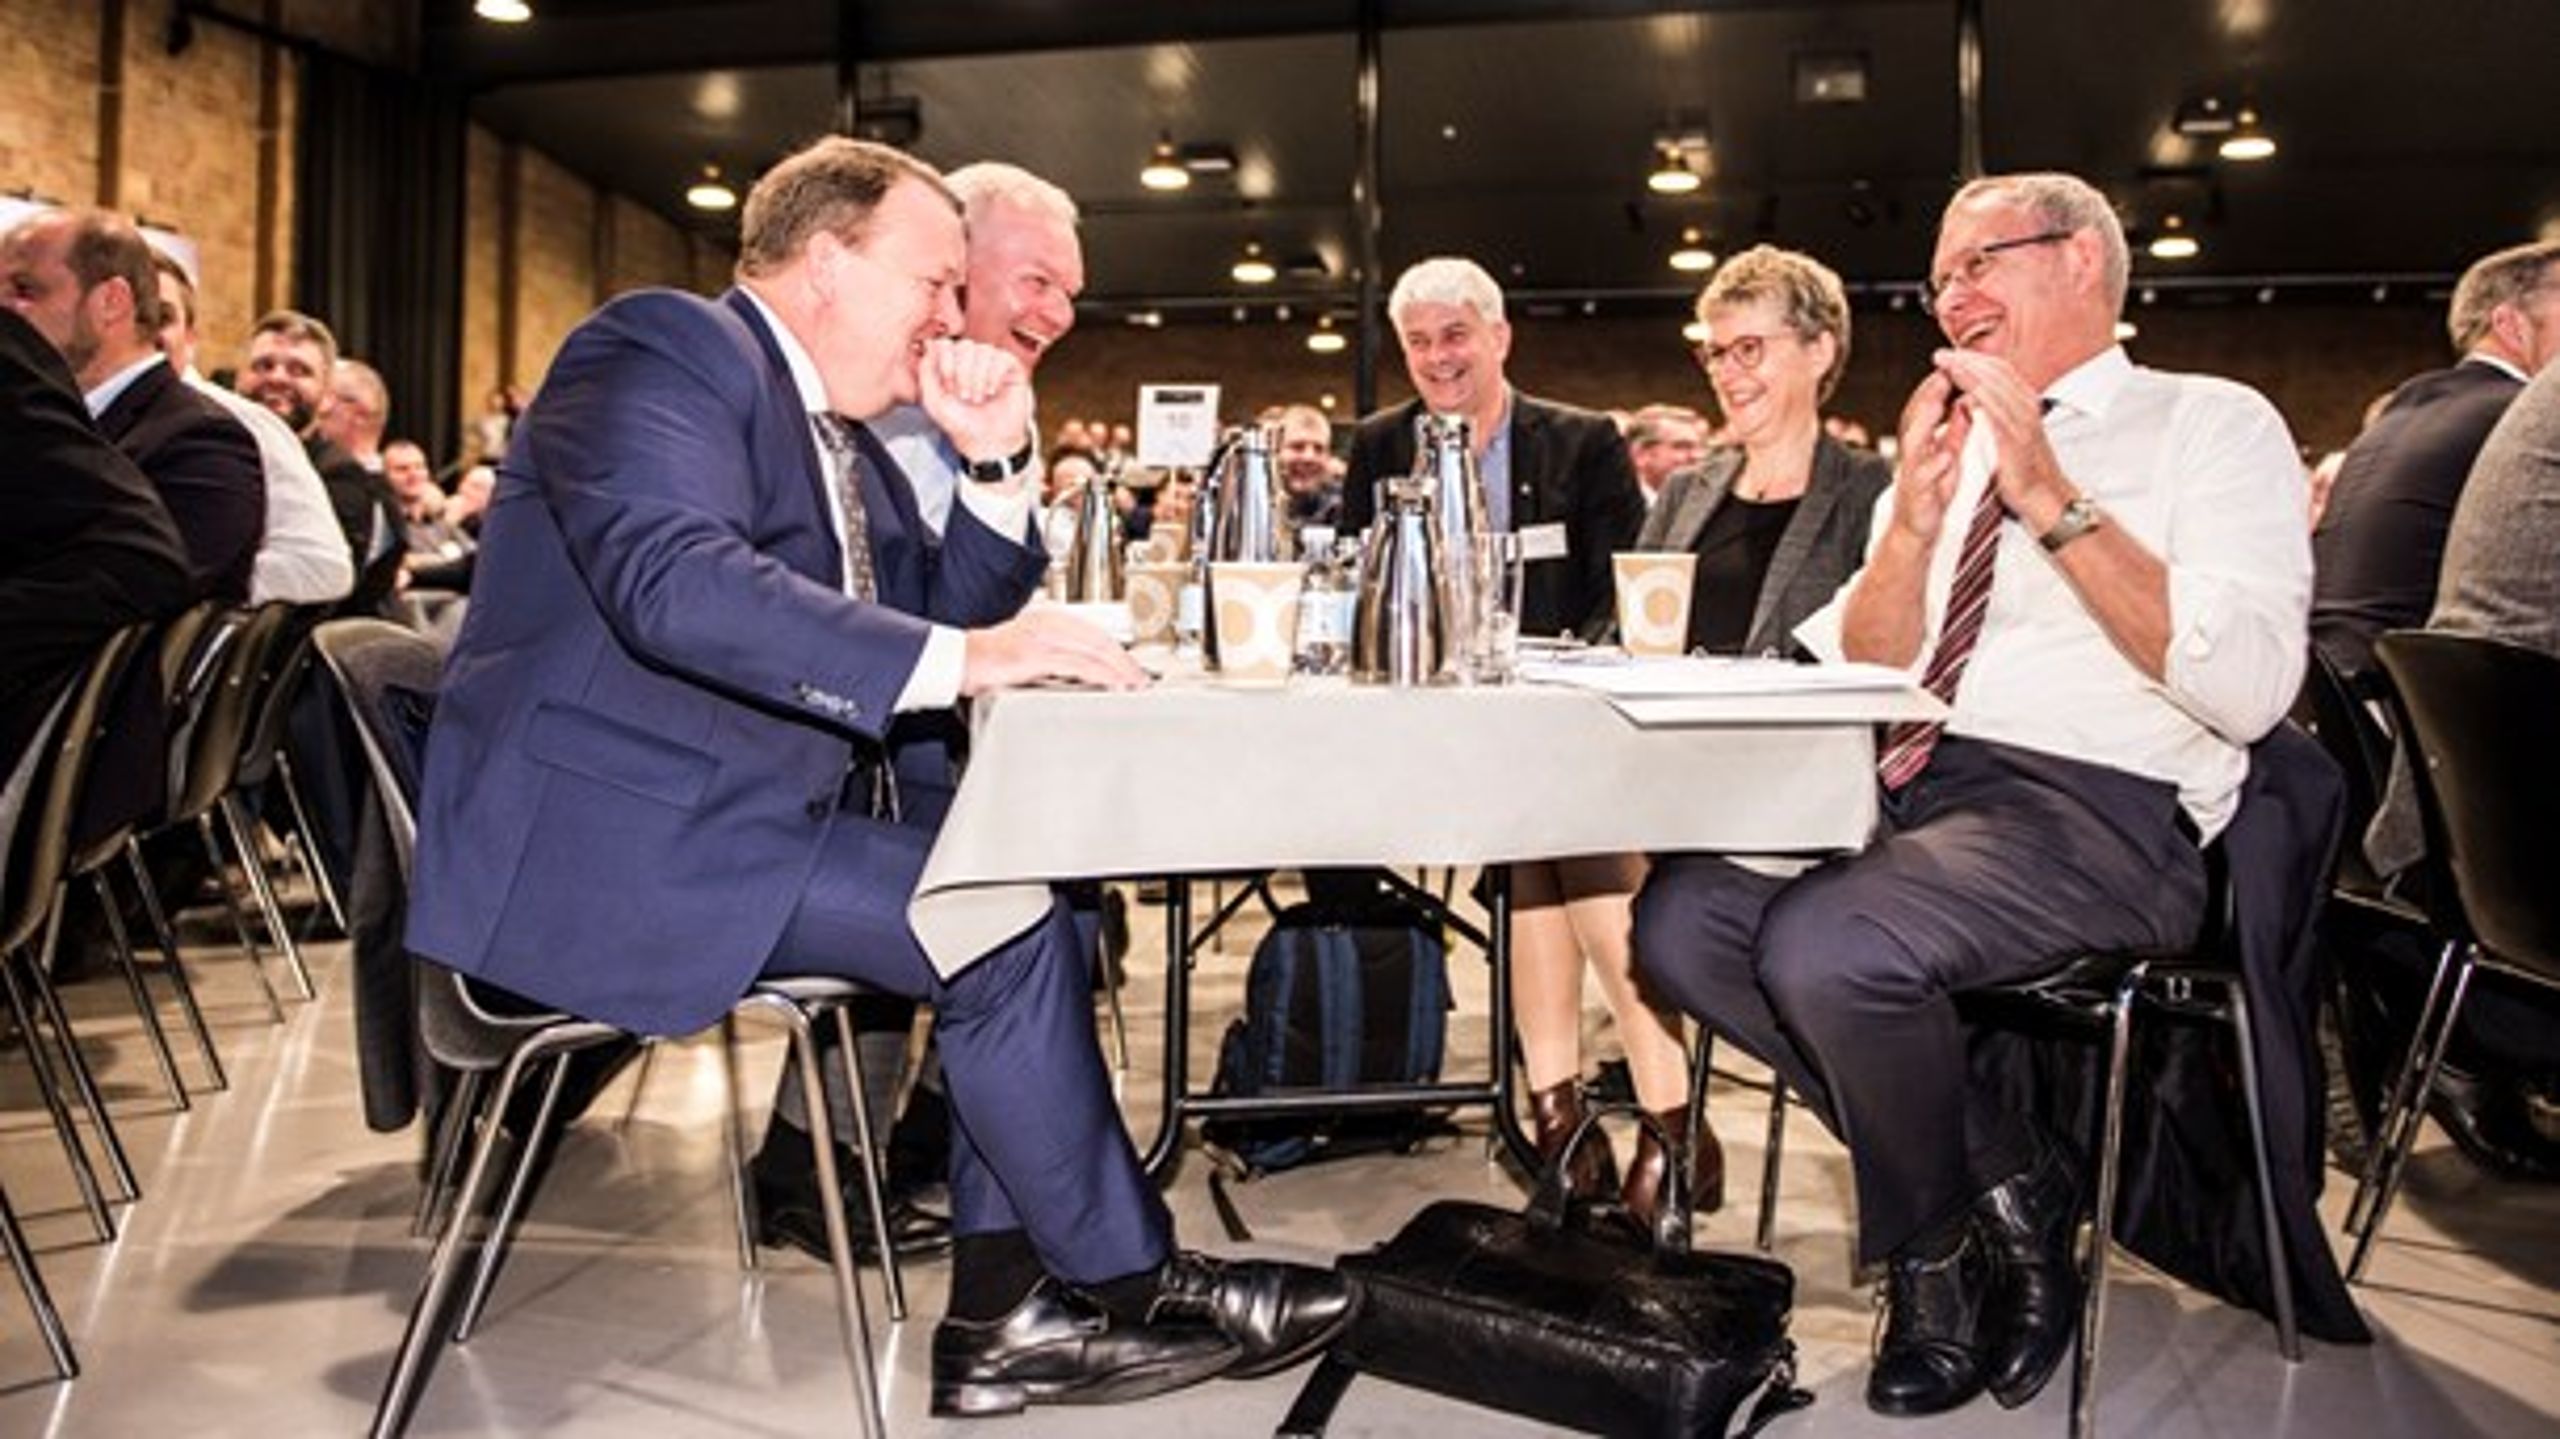 Statsminister Lars Løkke Rasmussen var onsdag gæst til L&amp;F's årlige delegeretmøde. I midten af billedet sidder den nyvalgte viceformand Thor Gunnar Kofoed. (Foto: Michael Drost-Hansen/Ritzau Scanpix). <br>